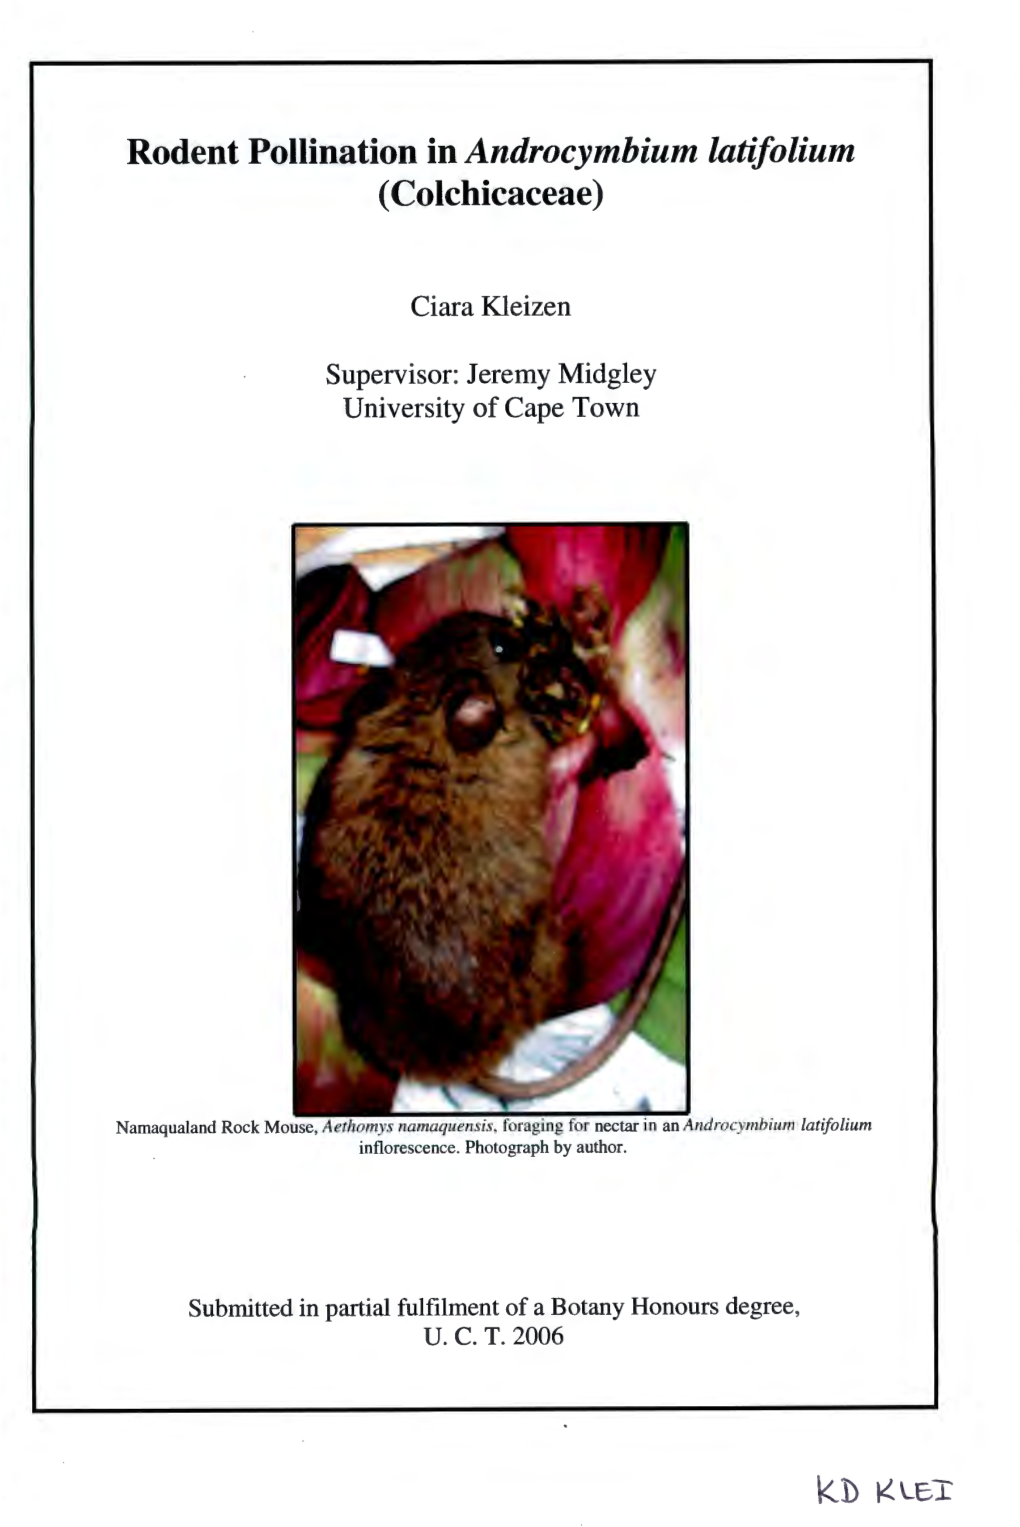 Rodent Pollination in Androcymbium Latifolium I (Colchicaceae) I I Ciara Kleizen Supervisor: Jeremy Midgley I University of Cape Town I I